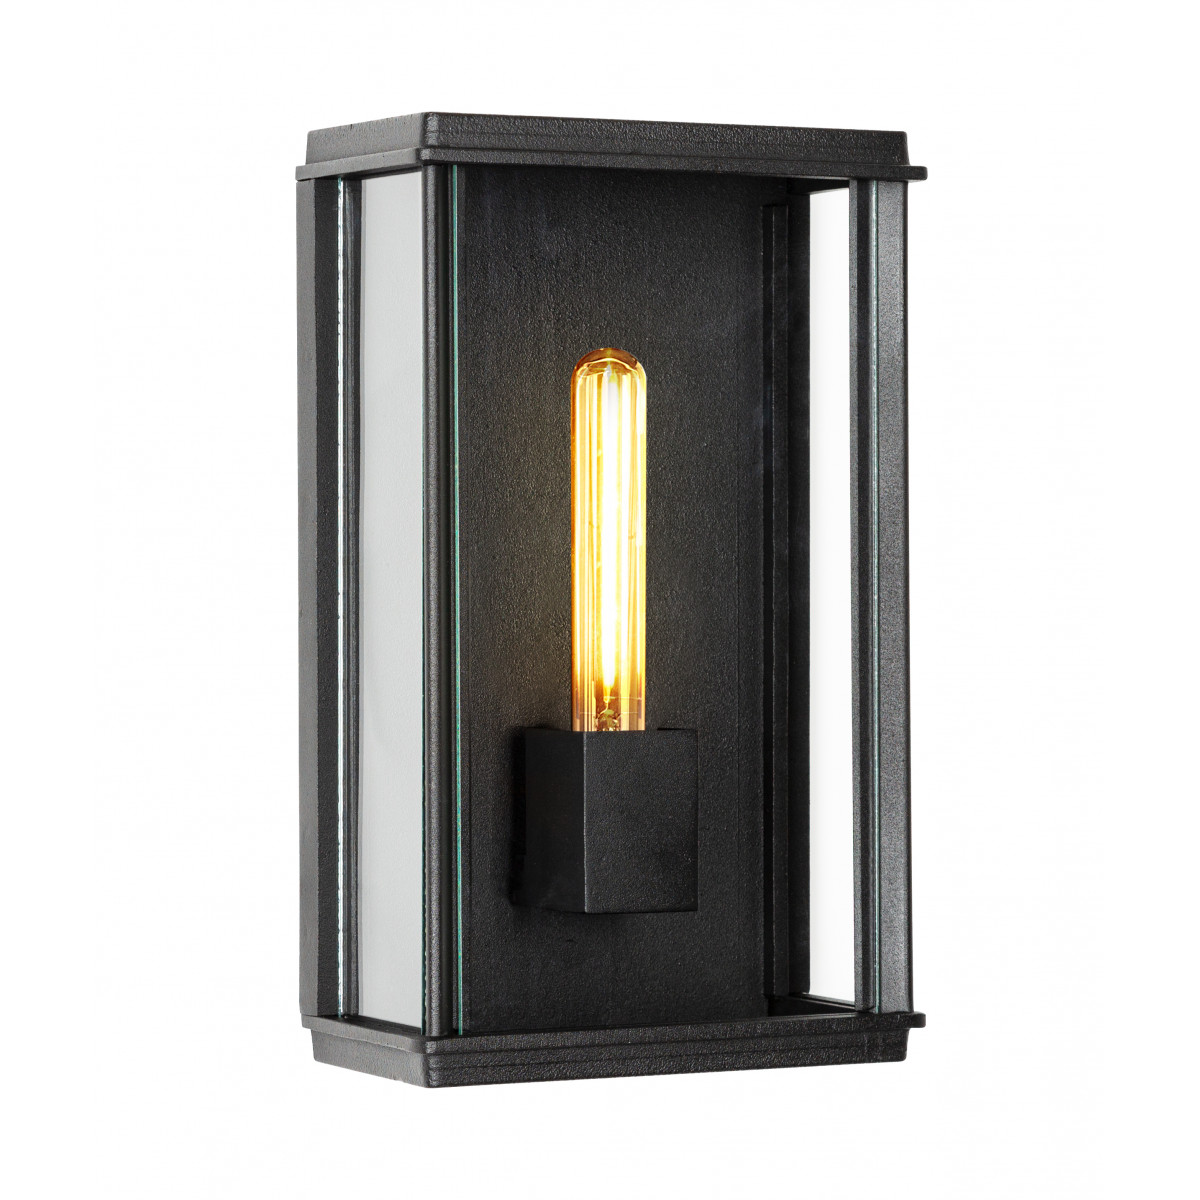 Lampe d'extérieur base rectangulaire, noire élégante Capital XL applique plate éclairage extérieur exclusif d'excellente qualité, pour l'extérieur